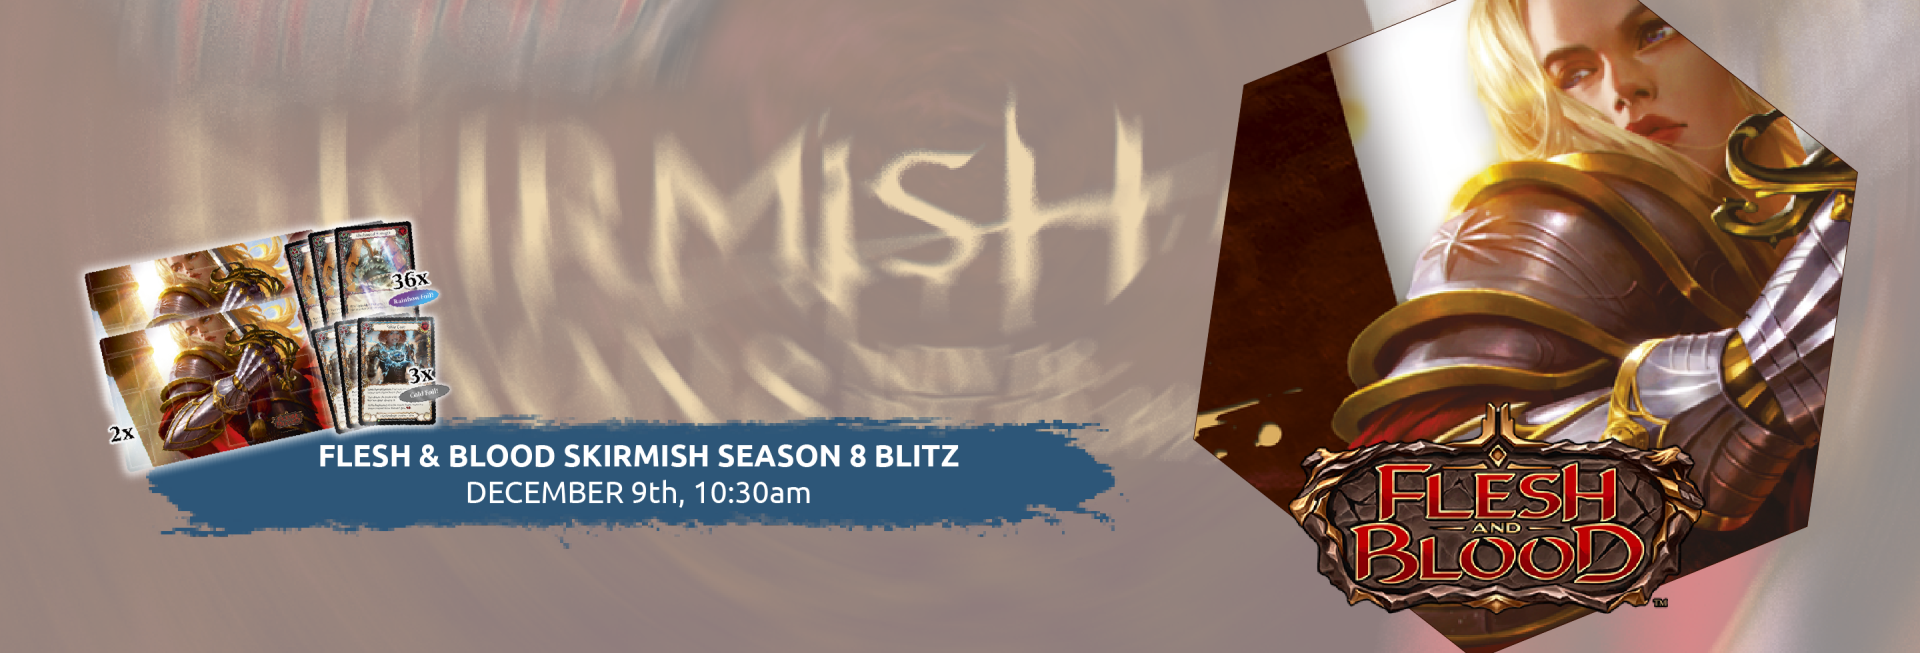 Flesh & Blood Skirmish Season 8 10:30am